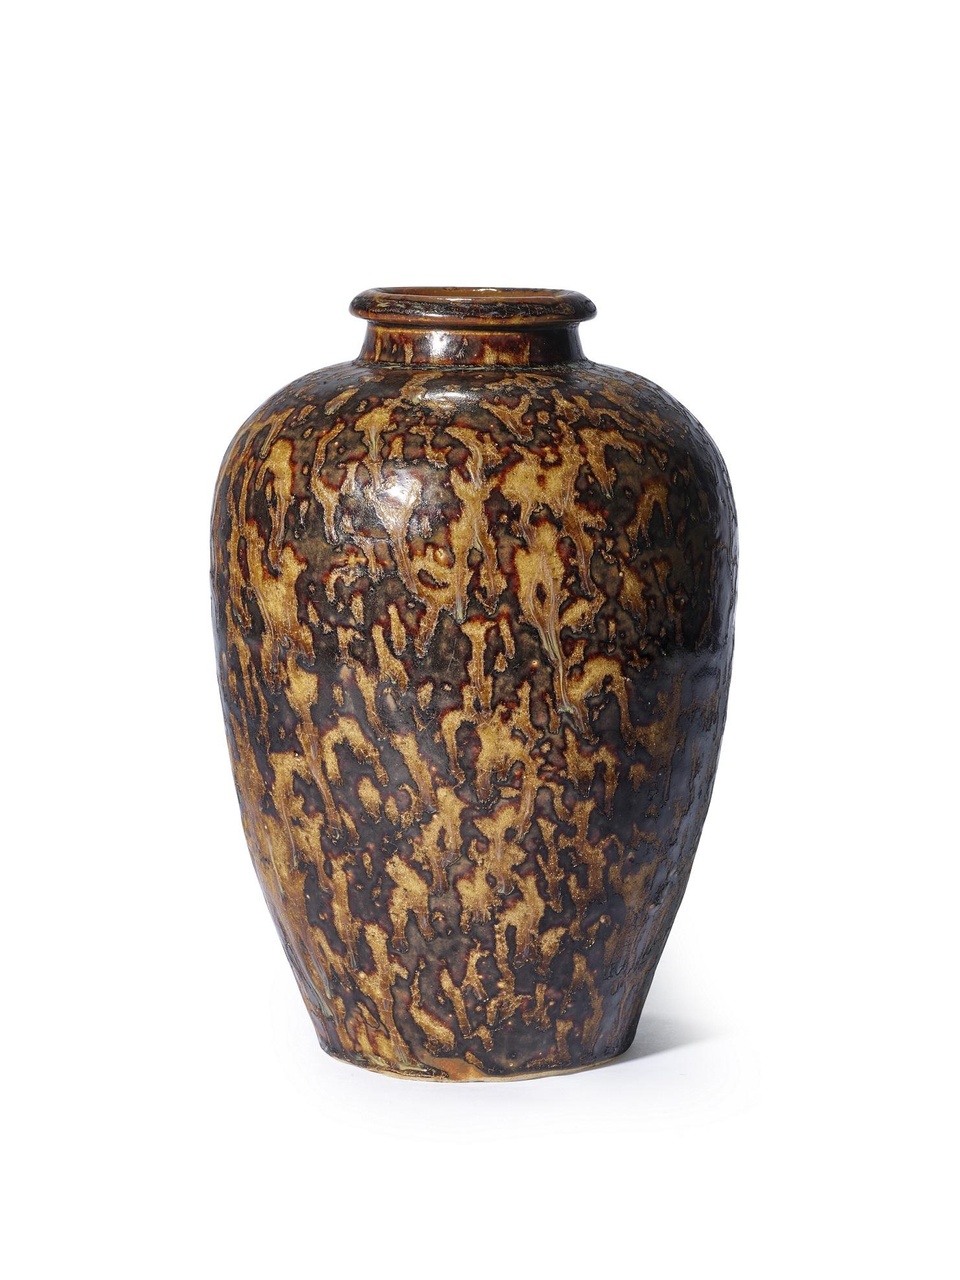 南宋 吉州窯玳瑁釉梅瓶
估價：900,000-1,200,000港元
